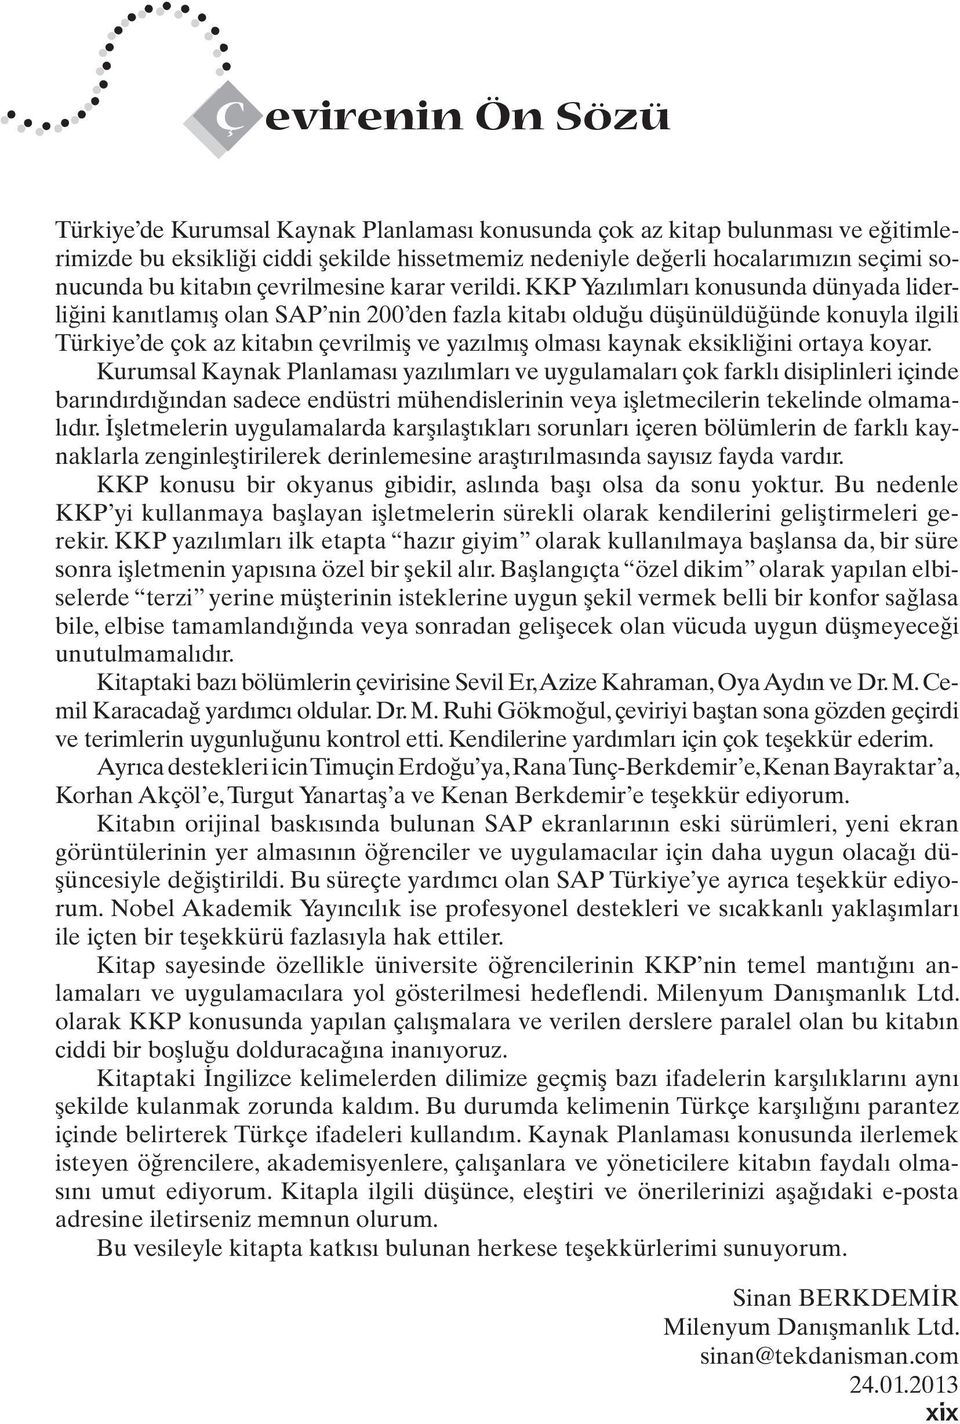 KKP Yazılımları konusunda dünyada liderliğini kanıtlamış olan SAP nin 200 den fazla kitabı olduğu düşünüldüğünde konuyla ilgili Türkiye de çok az kitabın çevrilmiş ve yazılmış olması kaynak